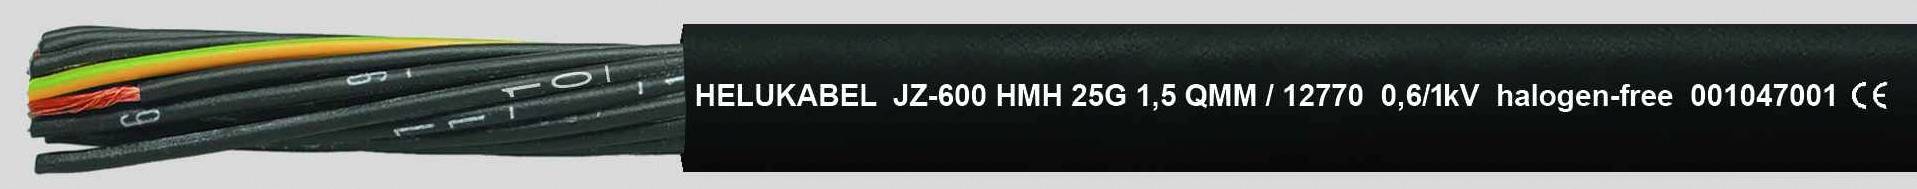 HELUKABEL JZ-600 HMH Steuerleitung 5 G 1.50 mm² Schwarz 12764-500 500 m